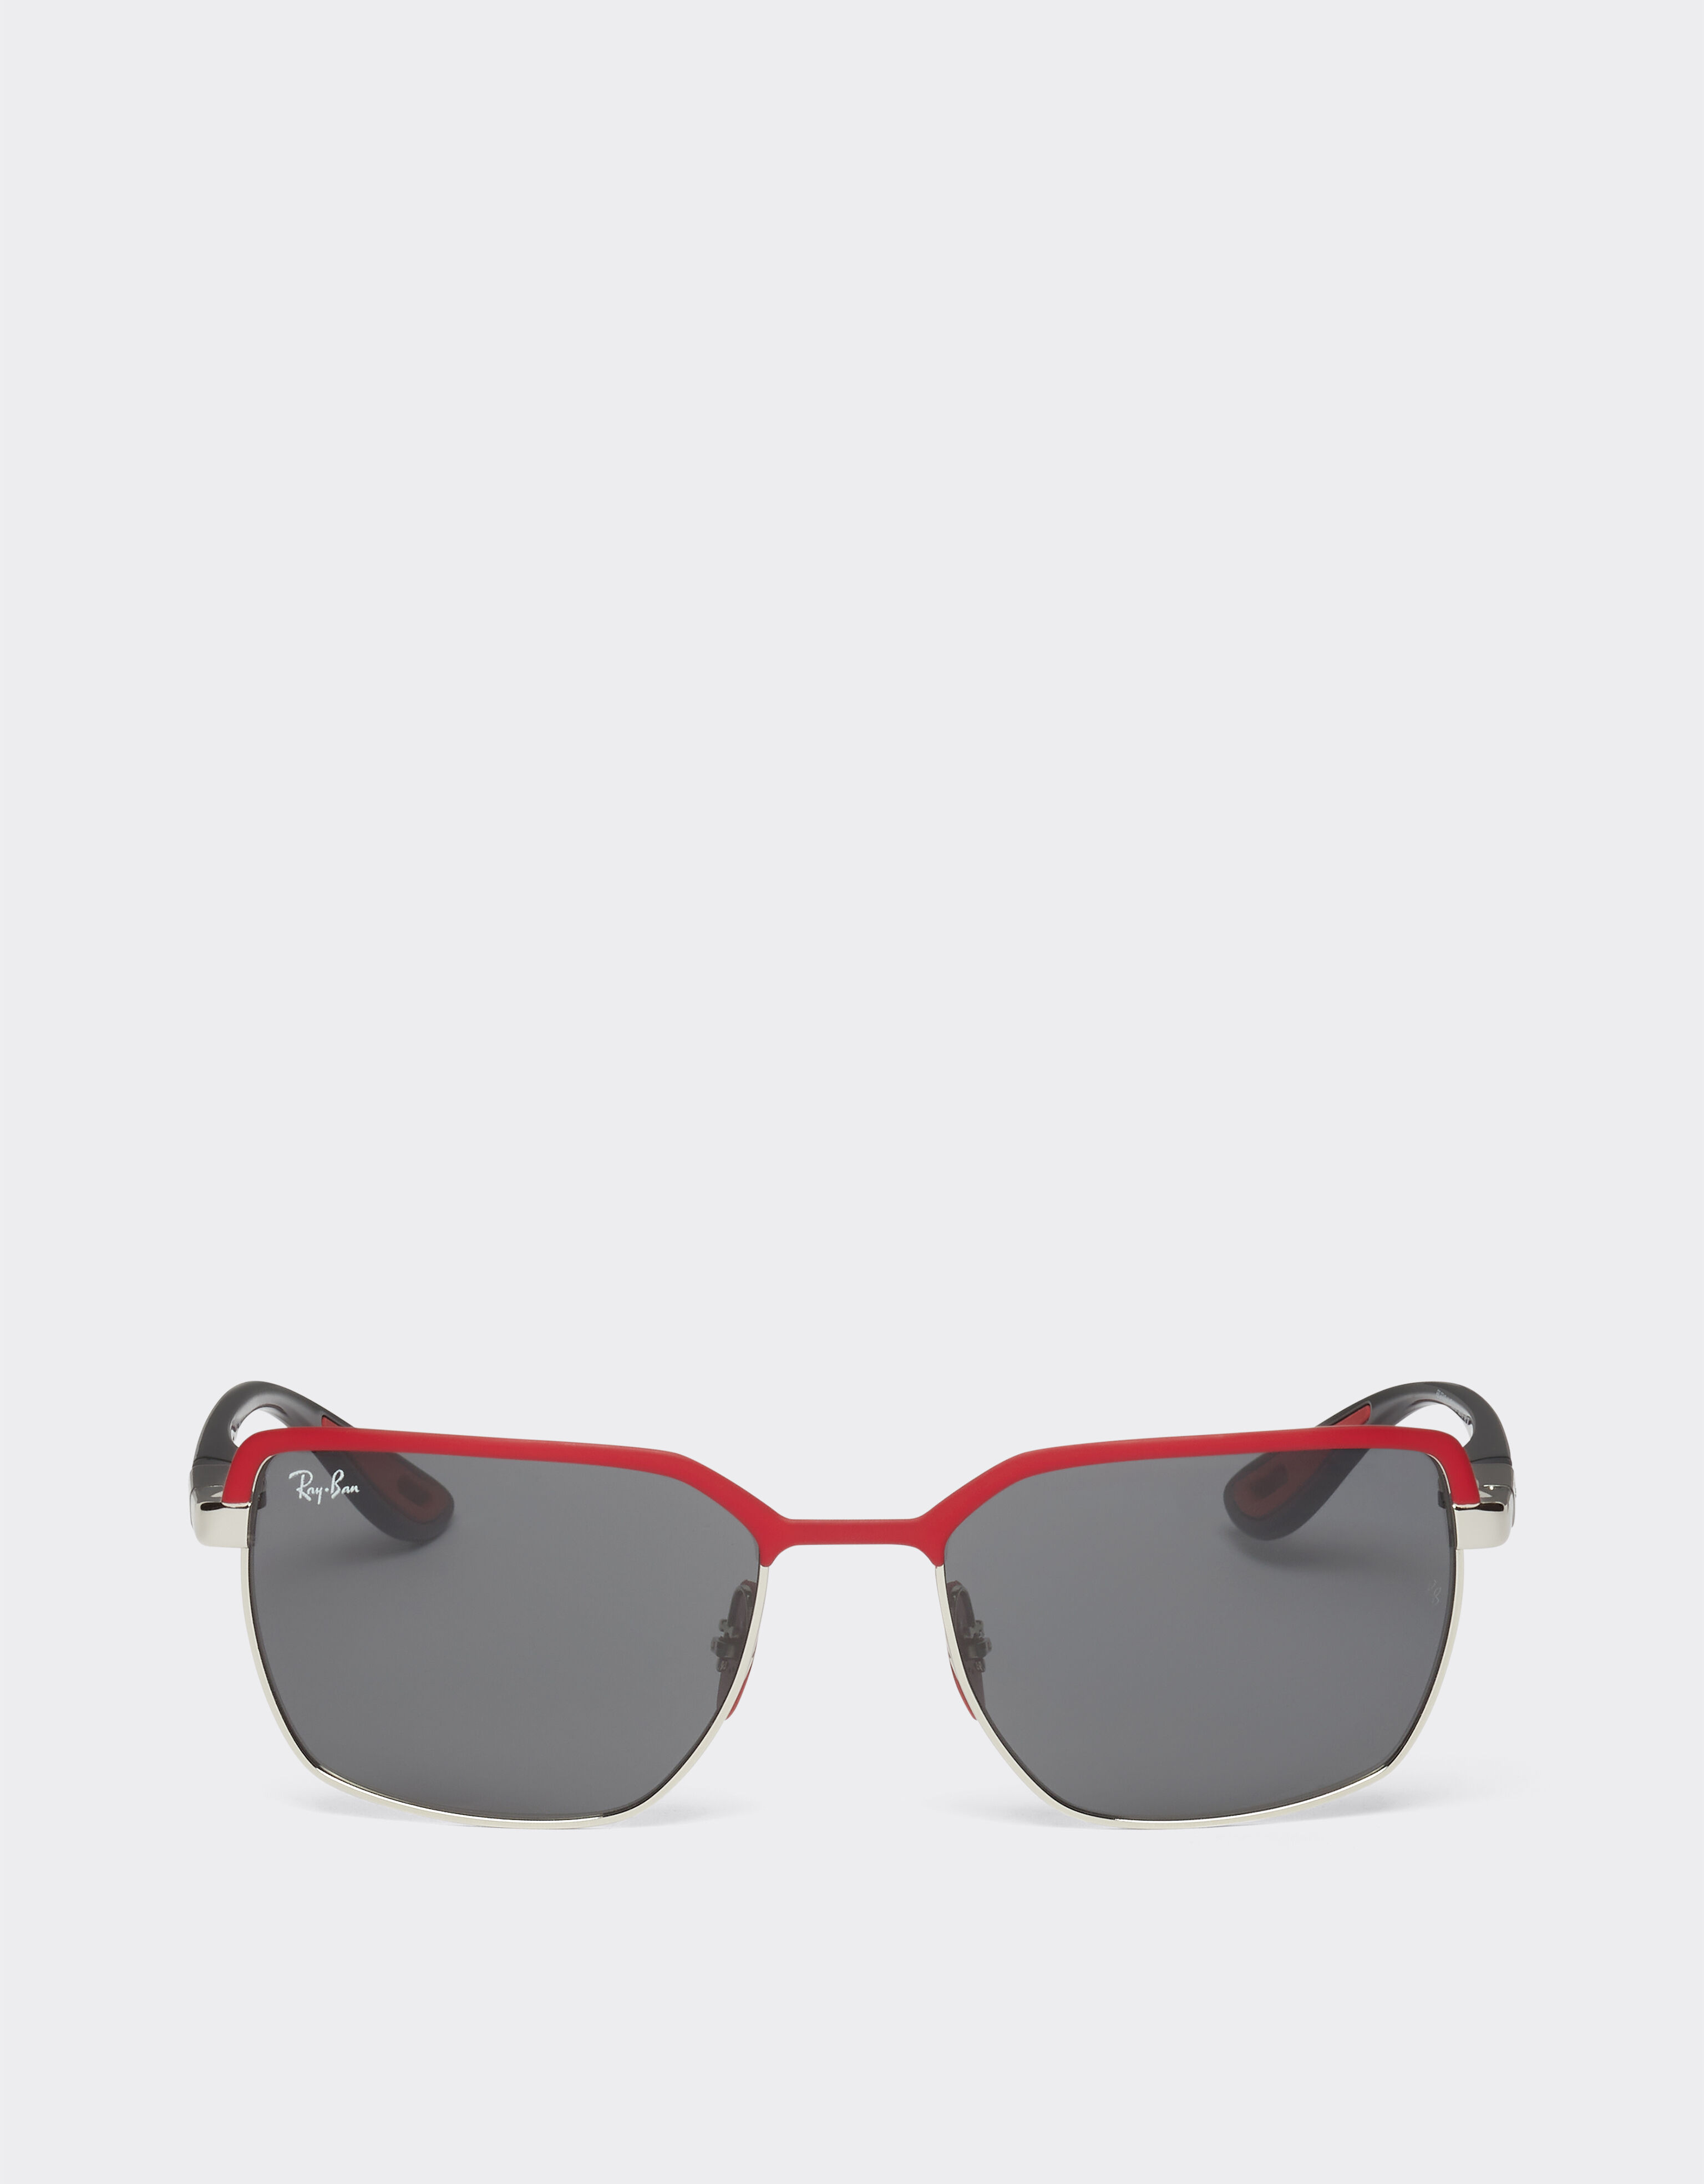 ${brand} Gafas de sol Ray-Ban para la Scuderia Ferrari 0RB3743M de metal rojo mate y gris plomo con lentes grises ${colorDescription} ${masterID}